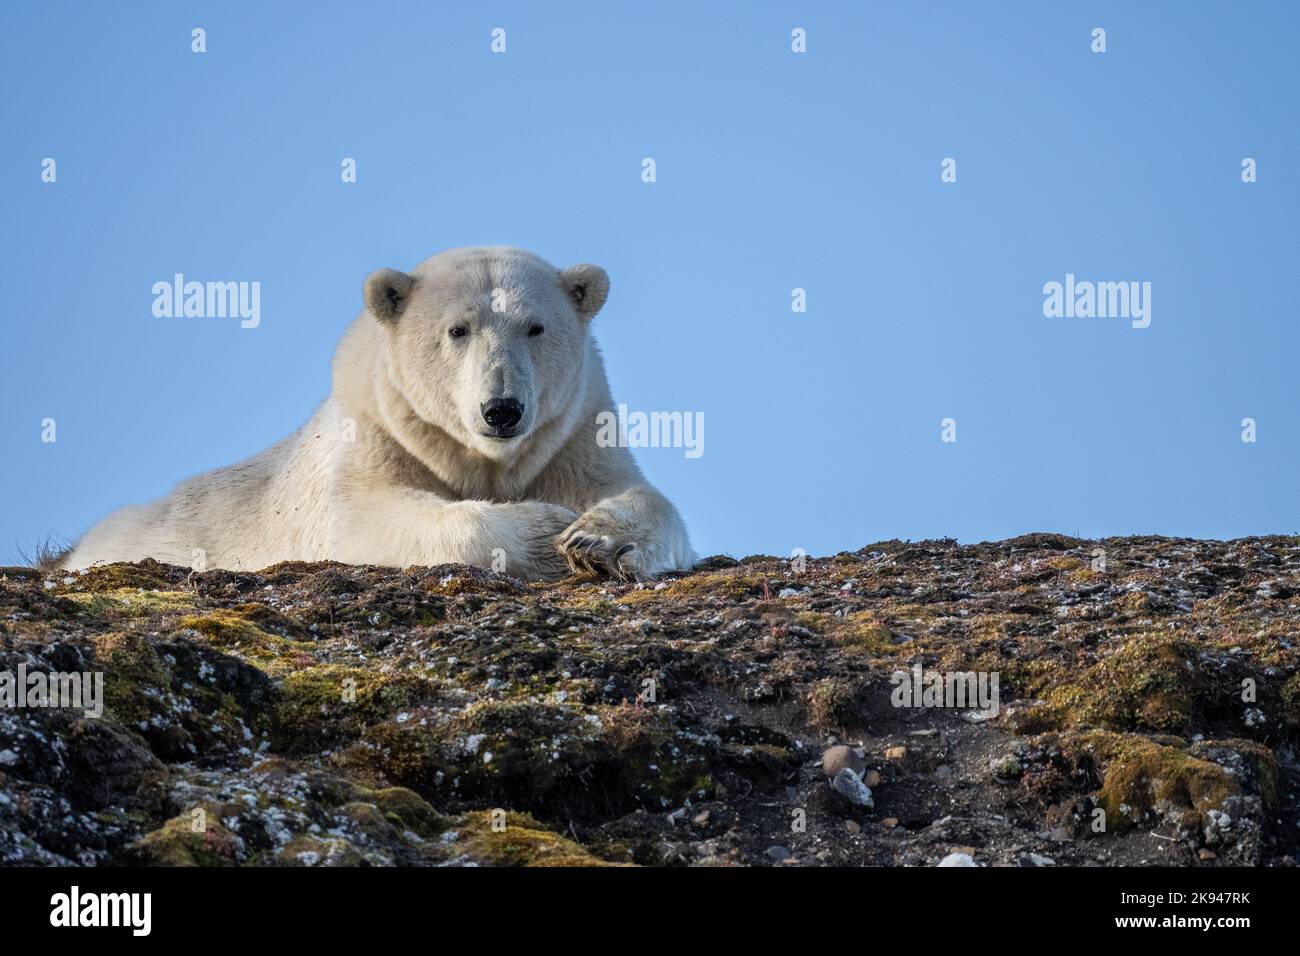 Ours polaire (Ursus maritimus) photographié au Spitsbergen, en Norvège, en août Banque D'Images